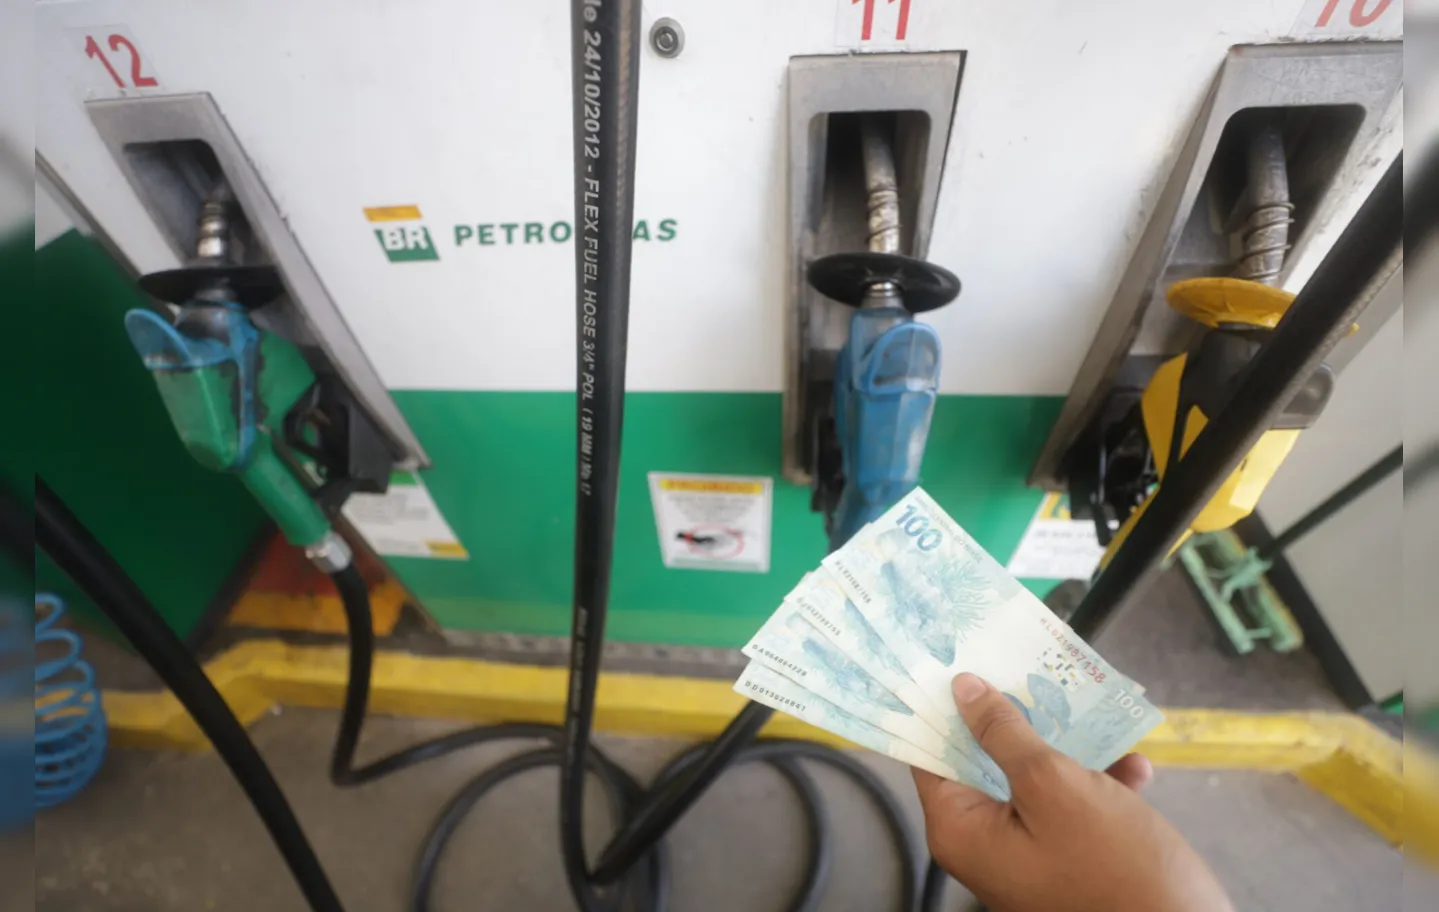 O valor previsto para diminuir nas refinarias da Petrobras representa umm recuo de 10%

Foto: Rafaela Araújo / Ag. A Tarde

Data: 07/03/2022